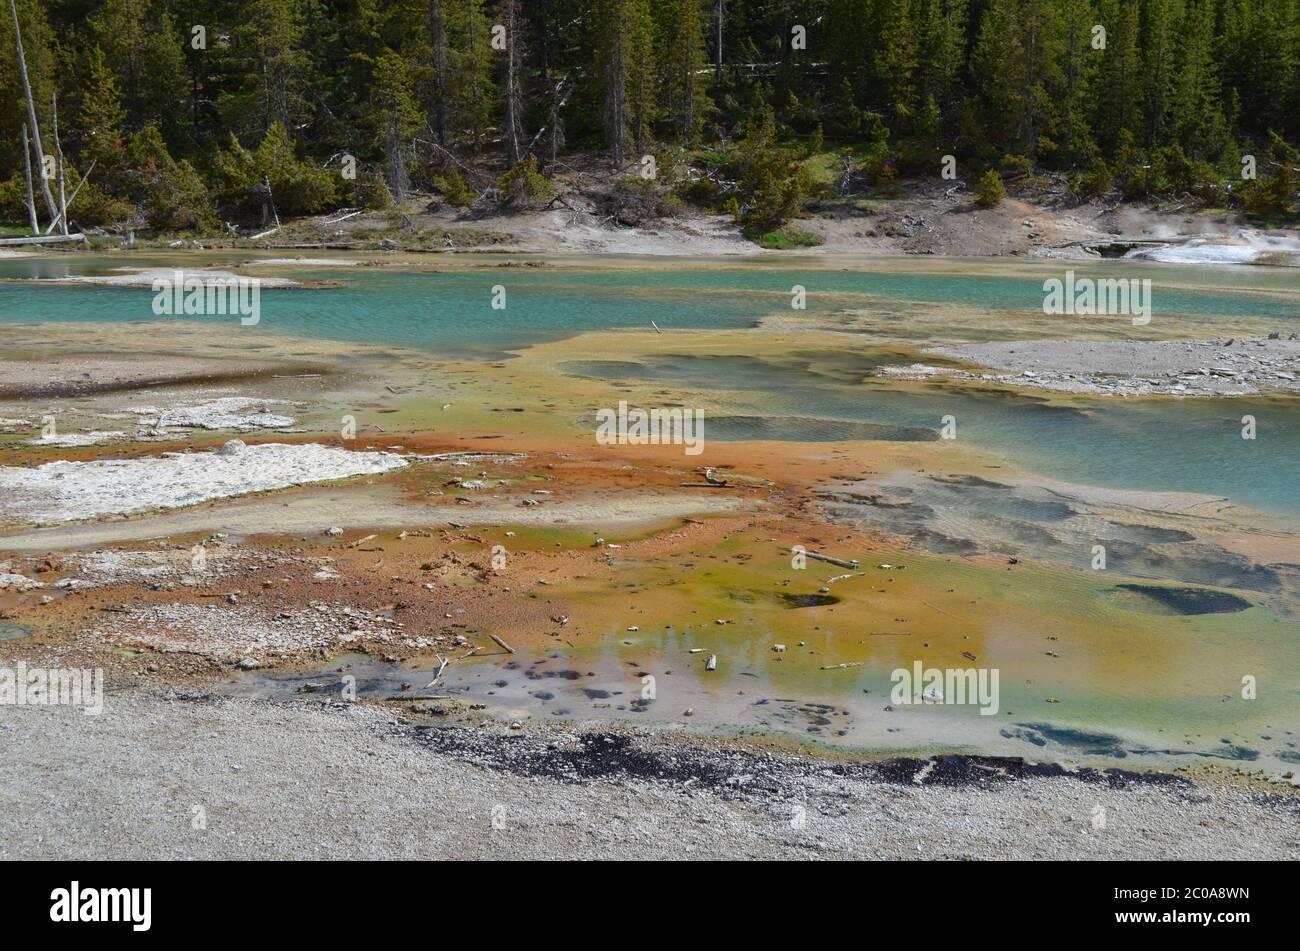 Fin du printemps dans le parc national de Yellowstone : lac crépitant dans la région du bassin de porcelaine du bassin de Norris Geyser Banque D'Images